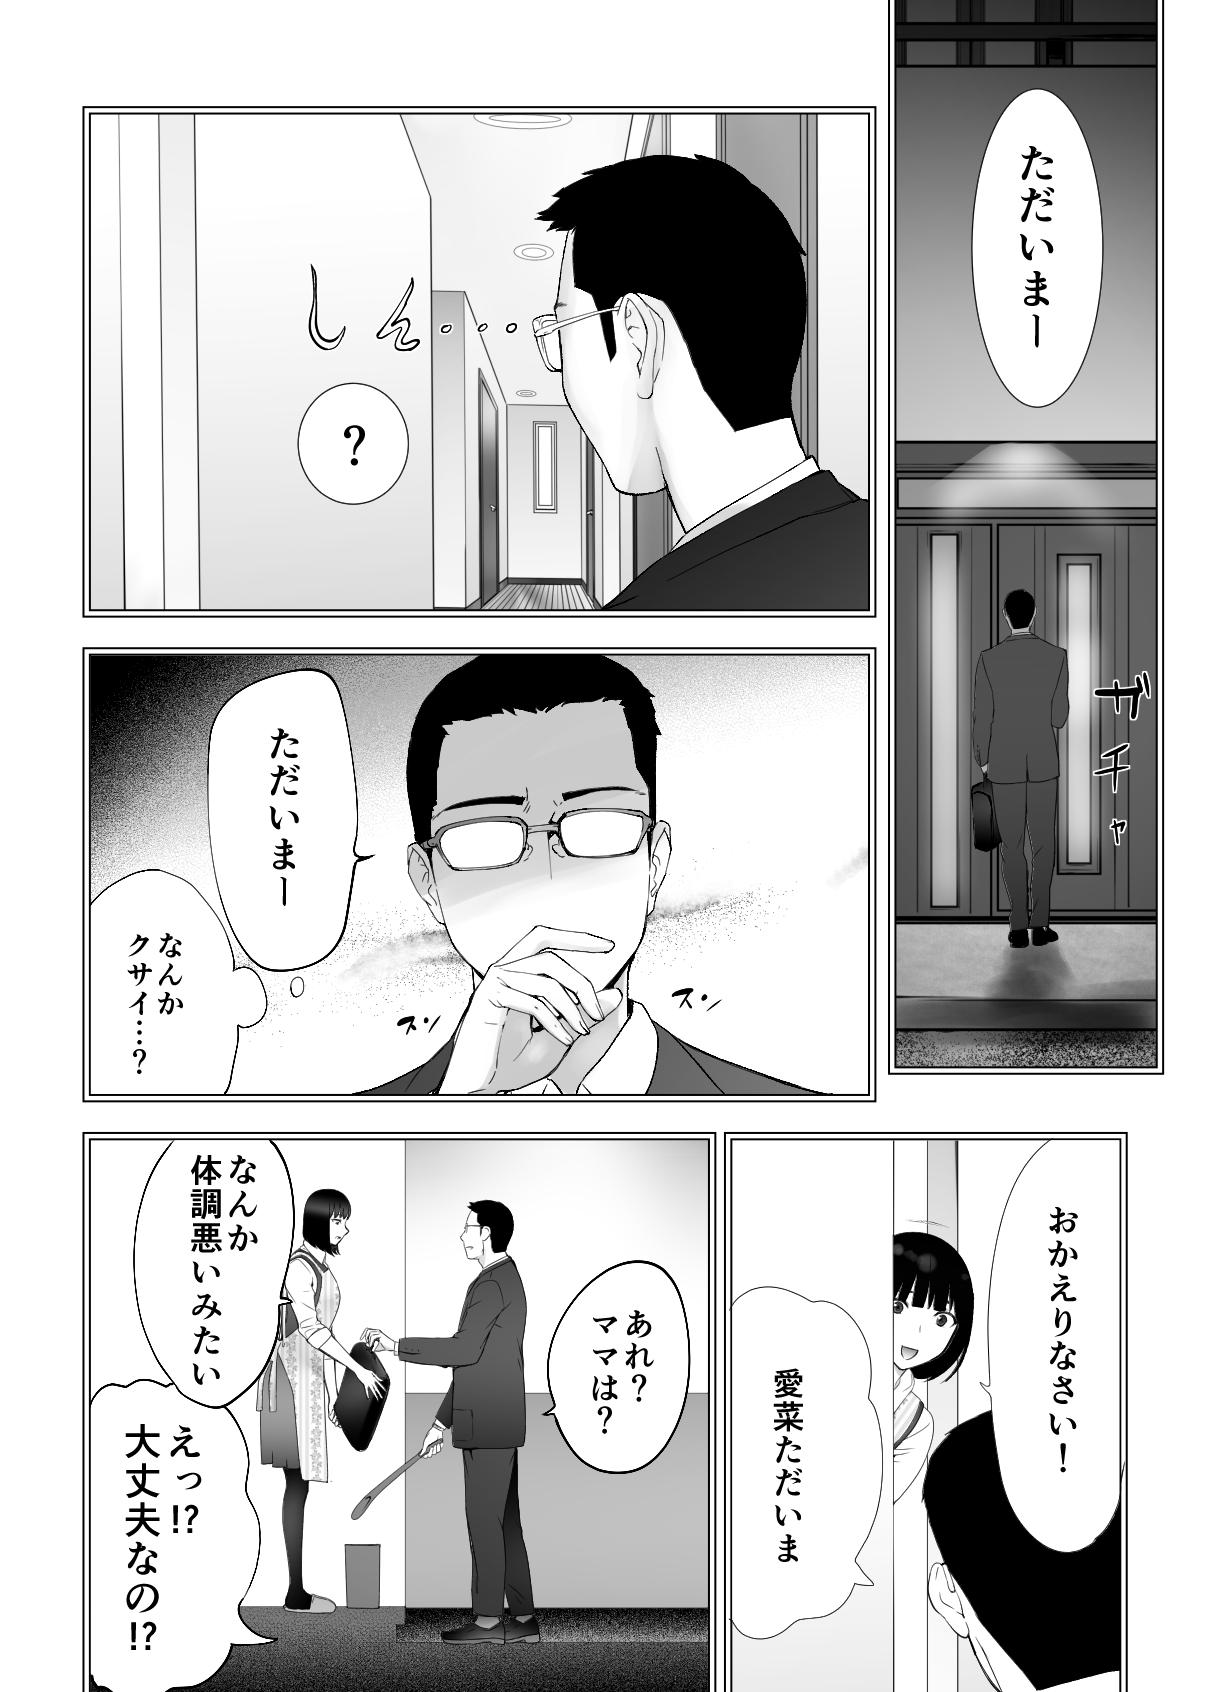 Hot Fuck Osananajimi ga Mama to Yatte Imasu. 9 - Original Public Nudity - Page 6